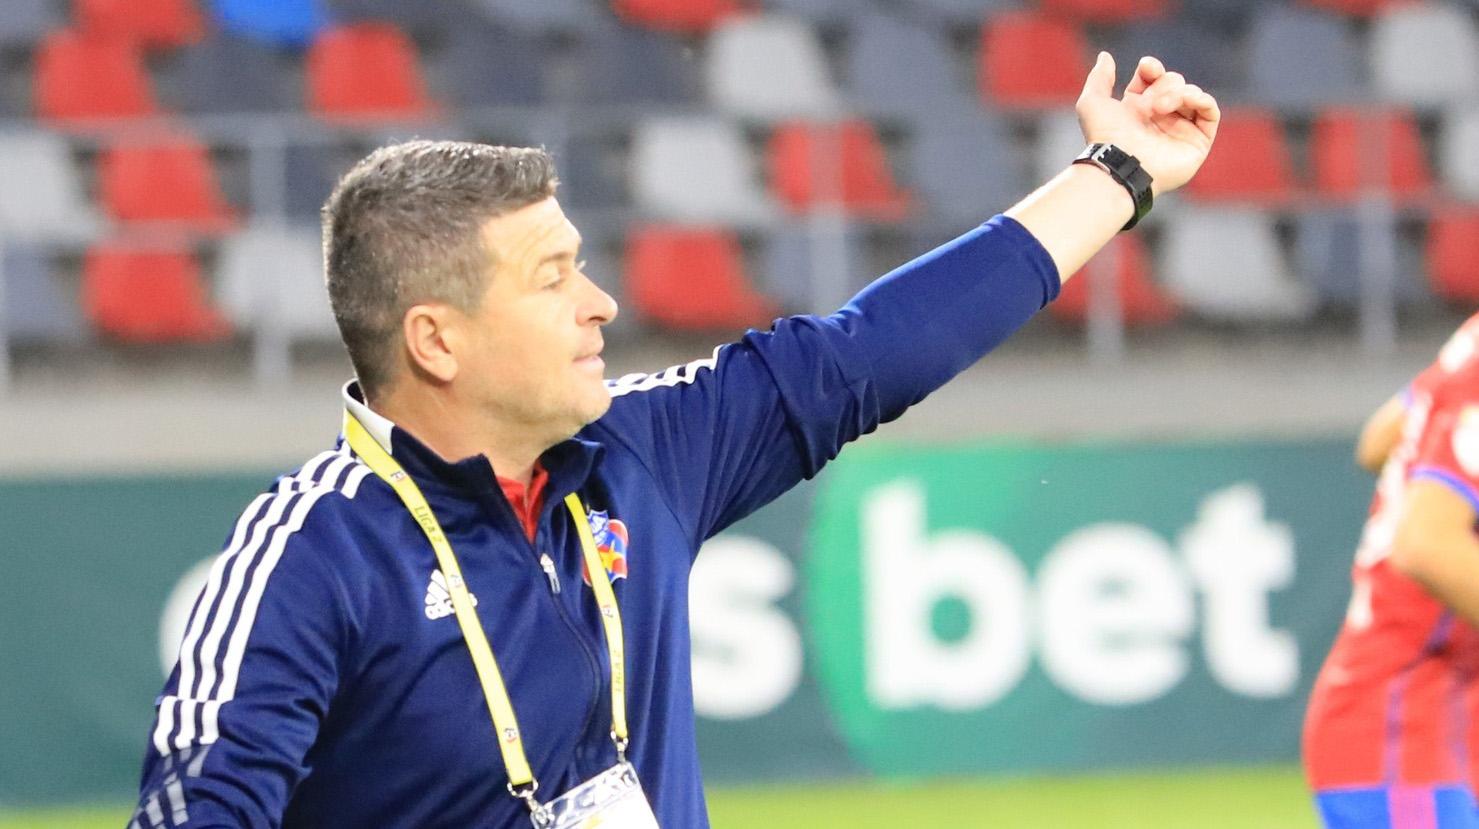 Daniel Oprița este deranjat de faptul că elevii lui au fost dominați în prima repriză a meciului cu Unirea Dej